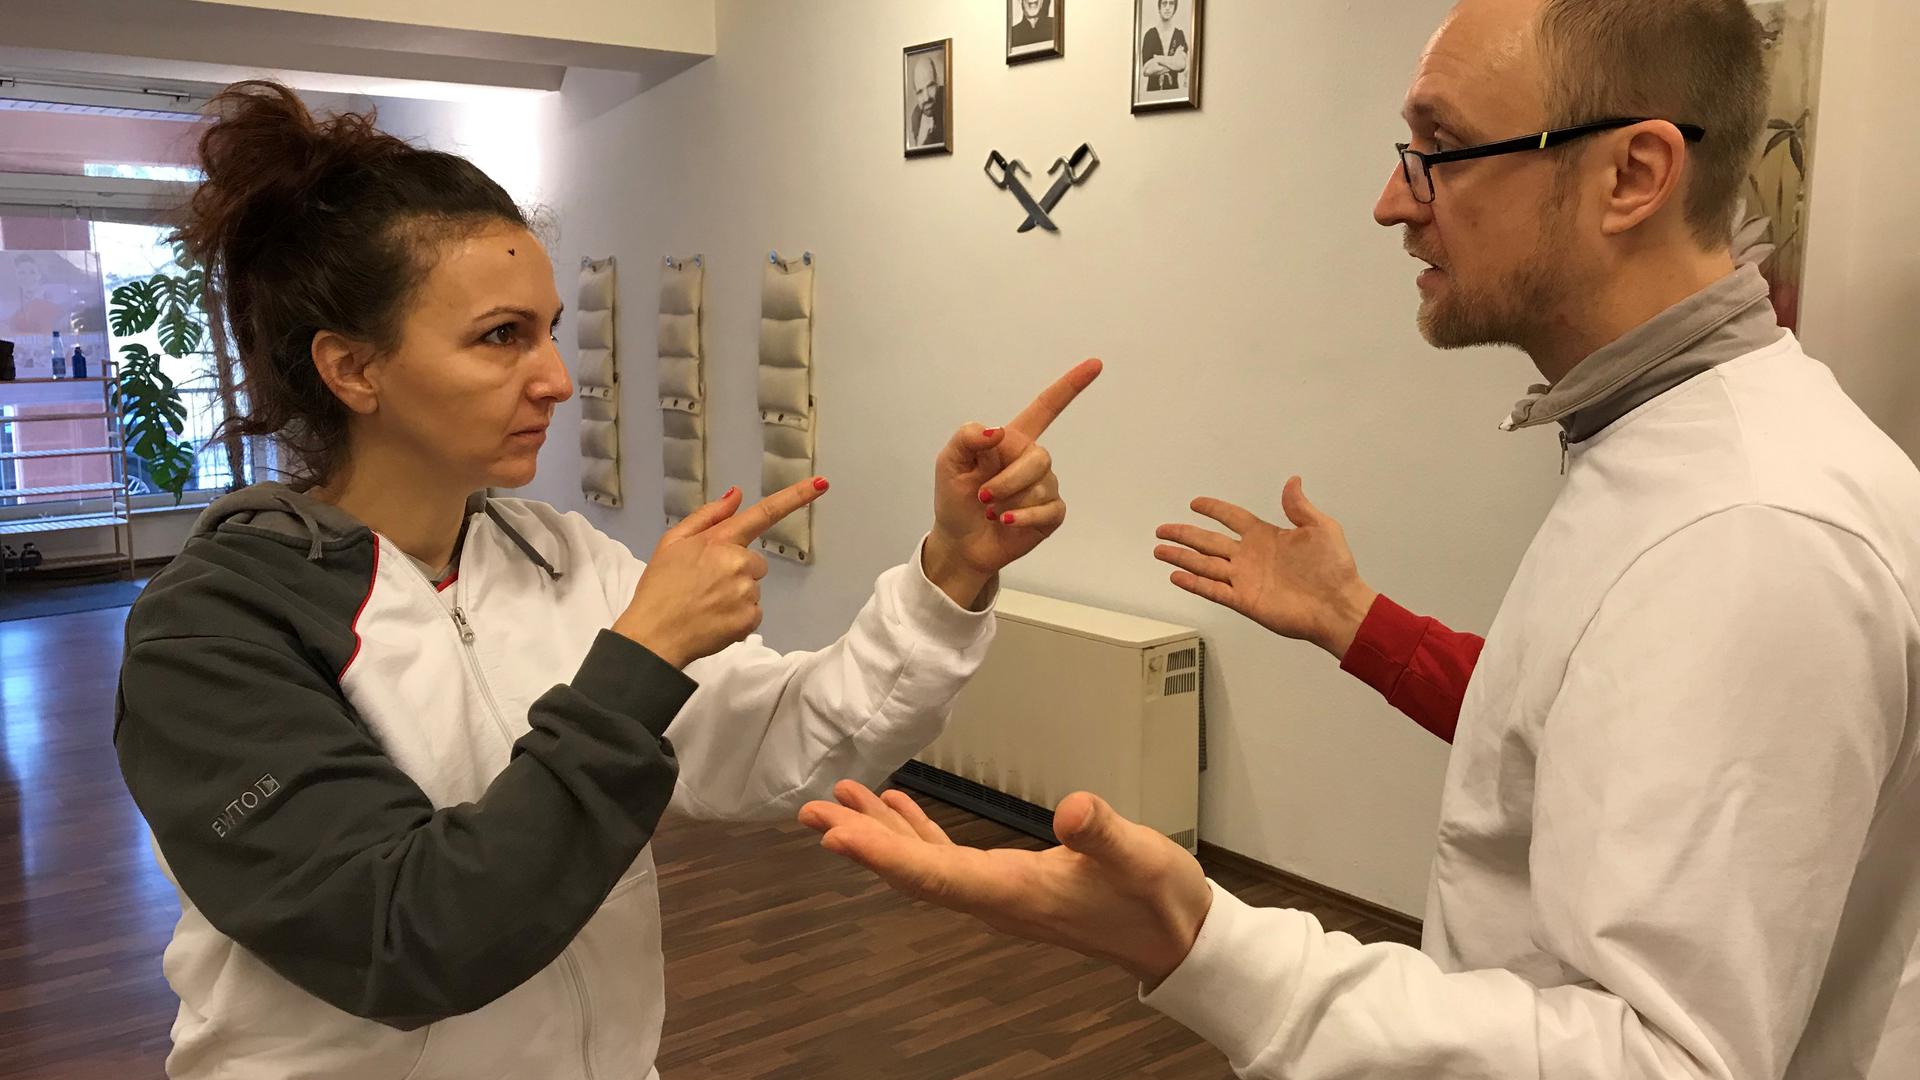 Mit aller Deutlichkeit weist Kurs-Assistentin Marion Balthasar ihr Gegenüber zurück. Hier trainiert sie mit Hanno Schneider eine selbstsichere Gestik.